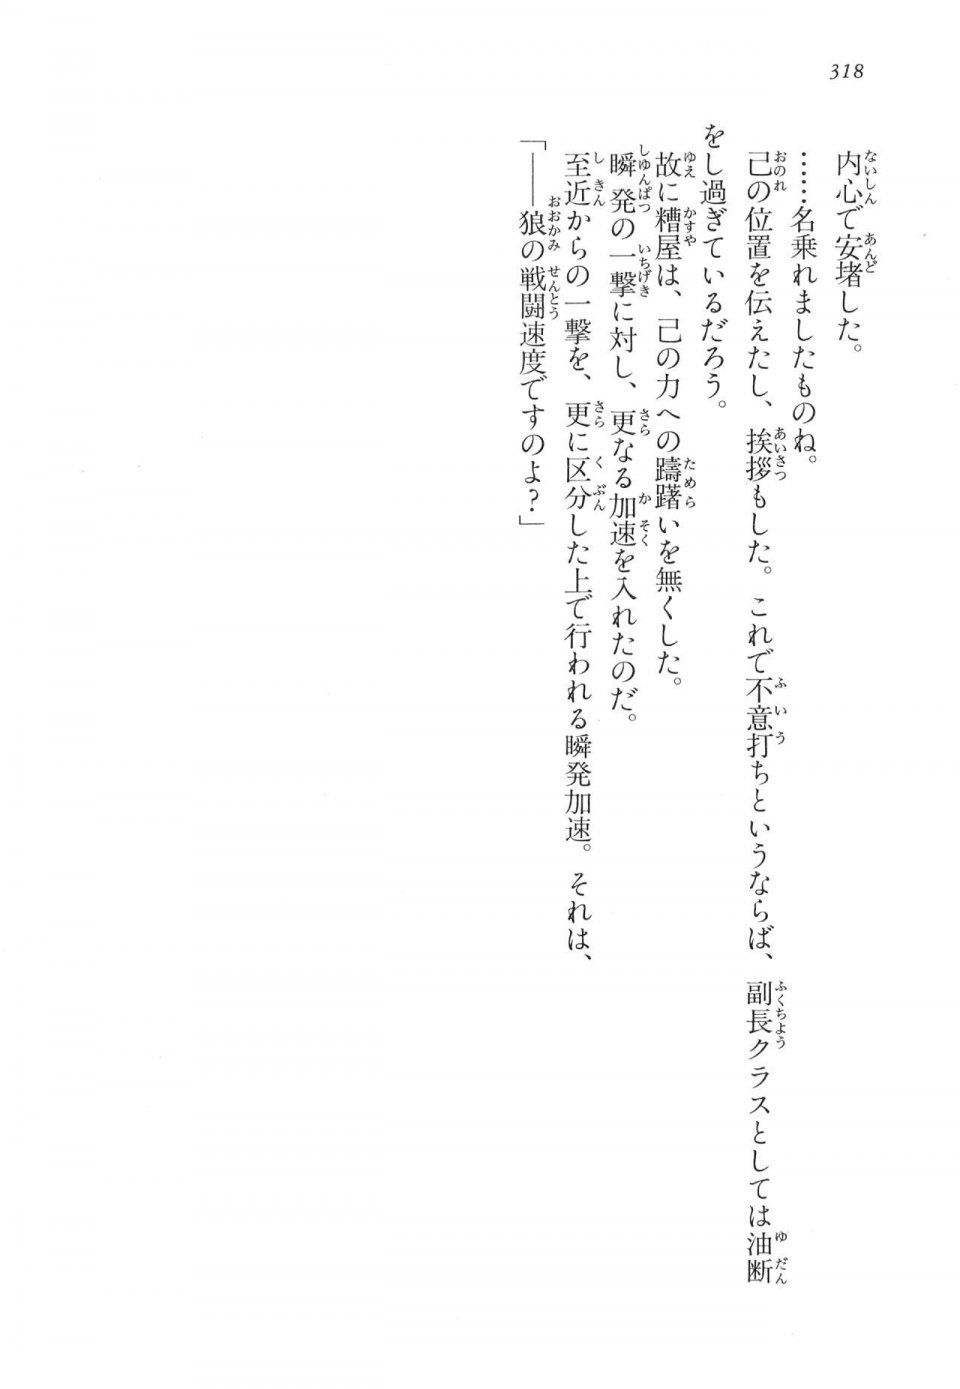 Kyoukai Senjou no Horizon LN Vol 17(7B) - Photo #318